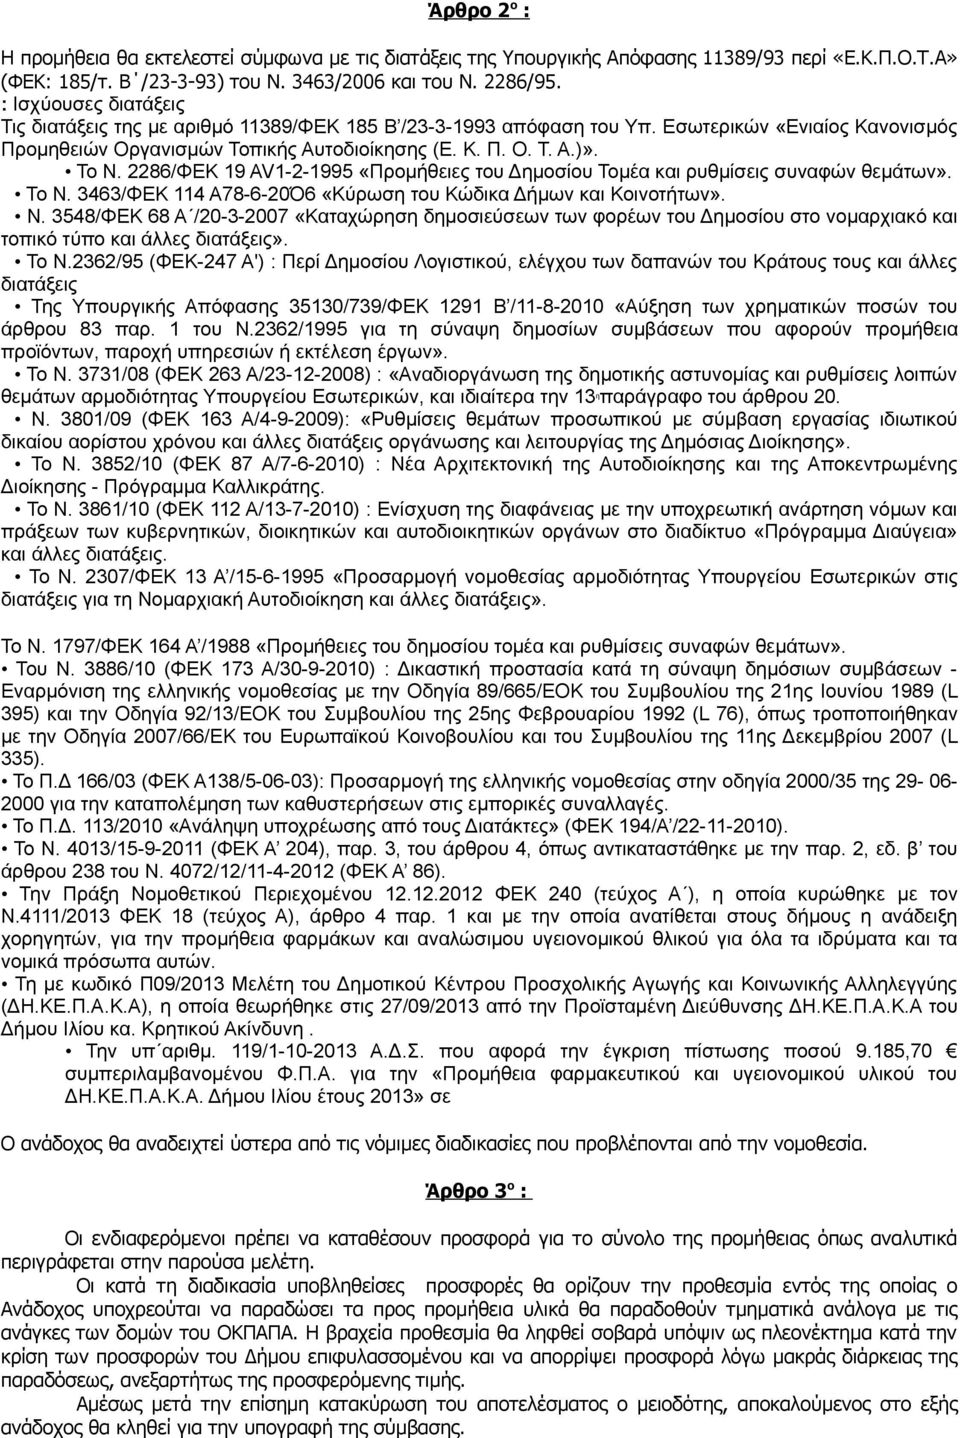 2286/ΦΕΚ 19 AV1-2-1995 «Προμήθειες του Δημοσίου Τομέα και ρυθμίσεις συναφών θεμάτων». To Ν.